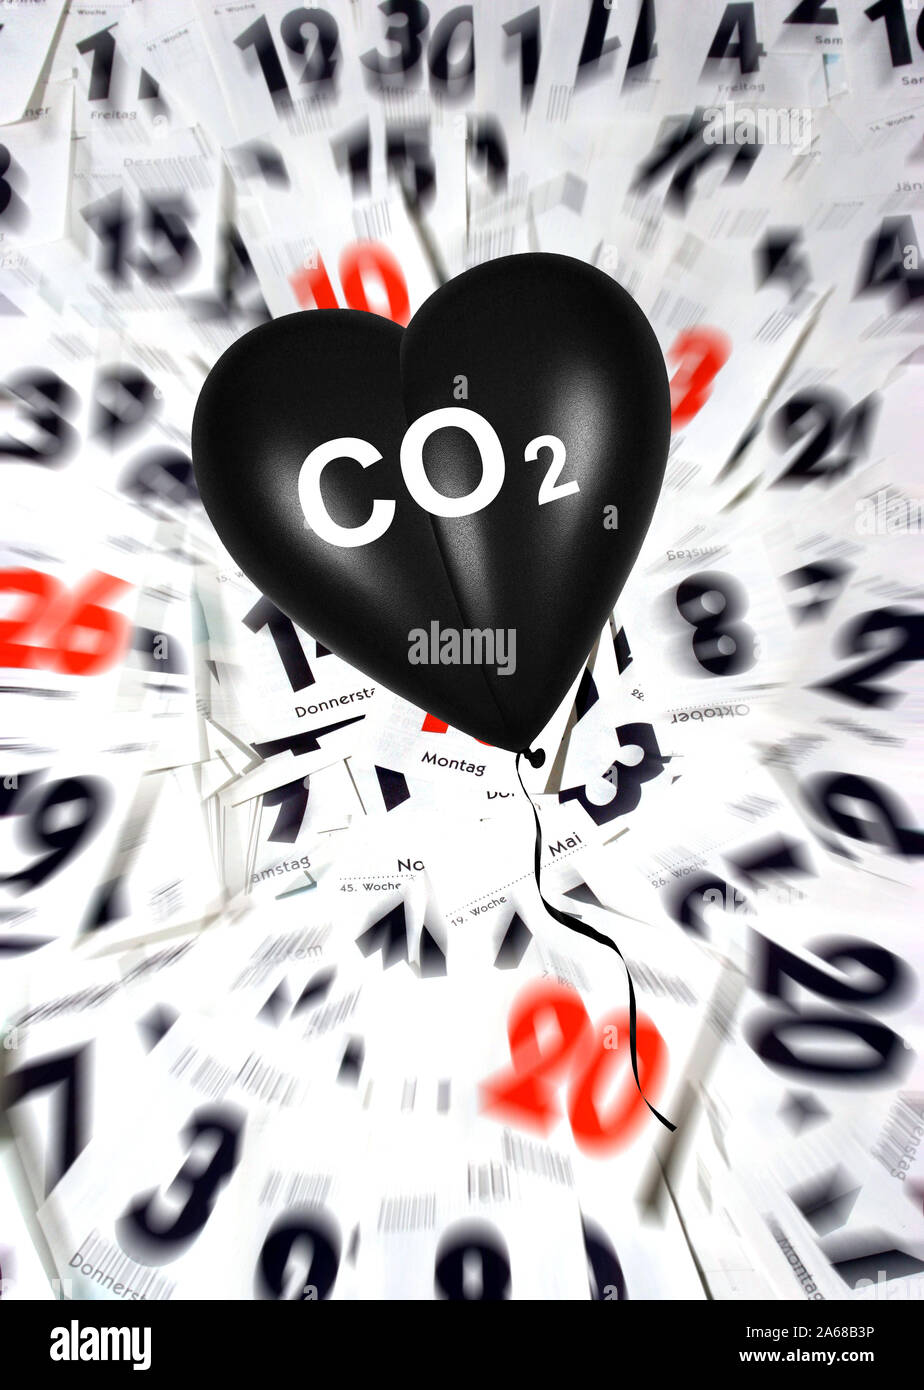 Schwarzes Herz, Luftballon, Herzluftballon, Aufdruck : CO2, Schadstoffe, unbrennbar Atemluft, gaz,, Erkrankung, Umwelt, Umweltverschmutzung,. Kalender, Banque D'Images